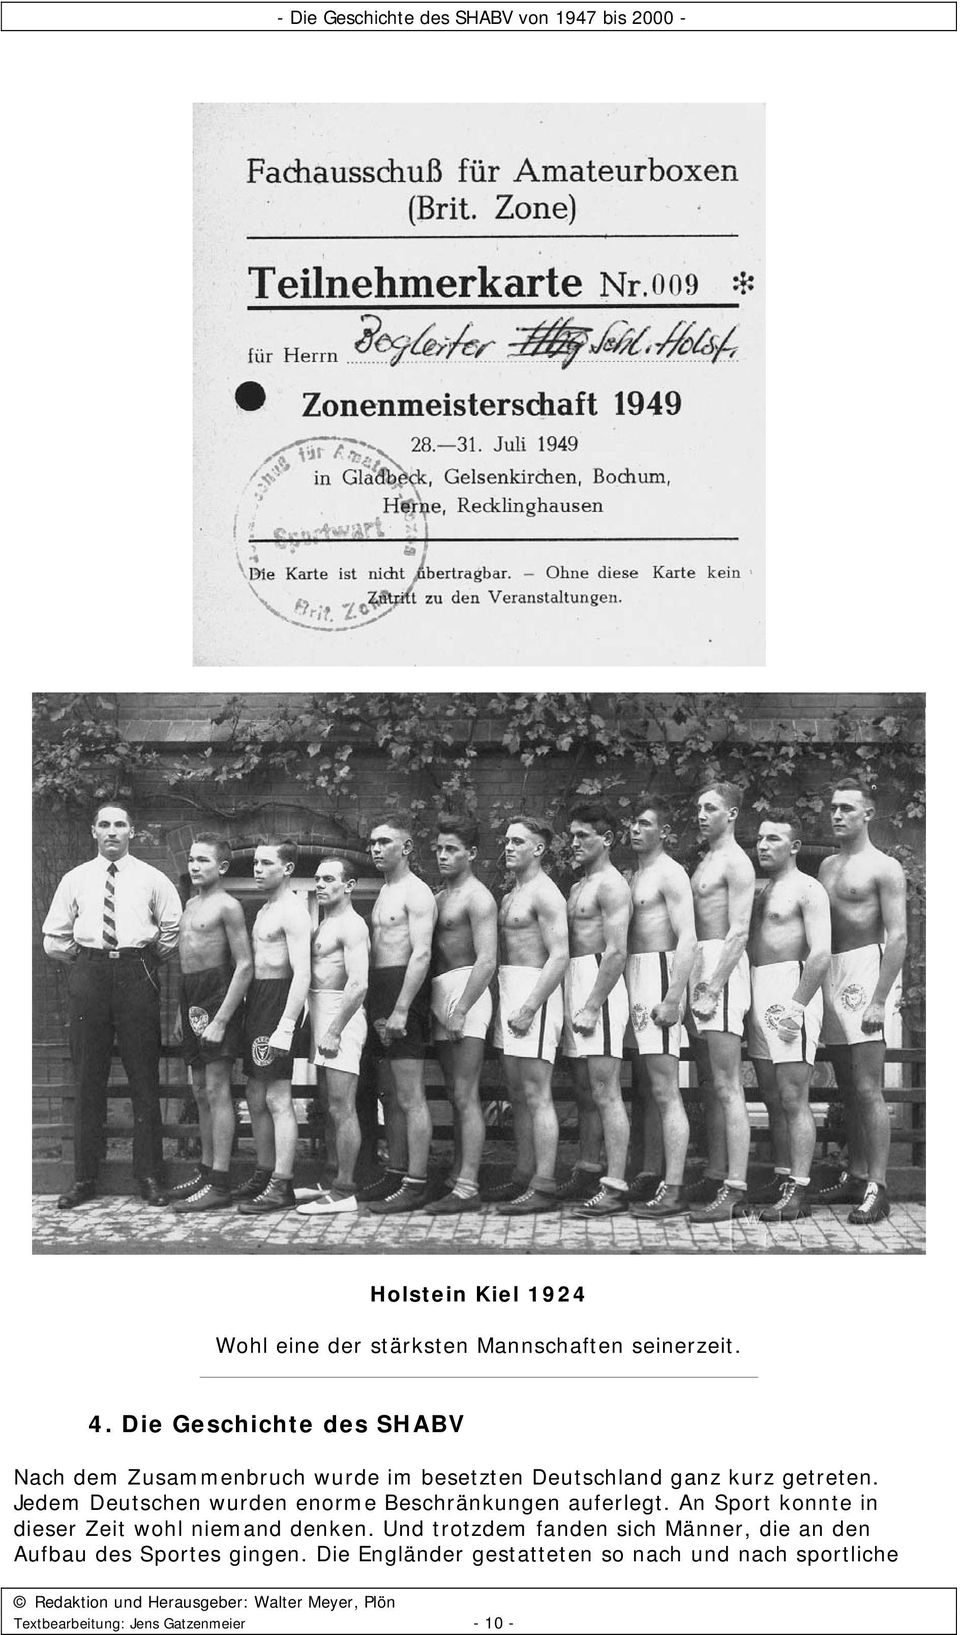 Jedem Deutschen wurden enorme Beschränkungen auferlegt. An Sport konnte in dieser Zeit wohl niemand denken.